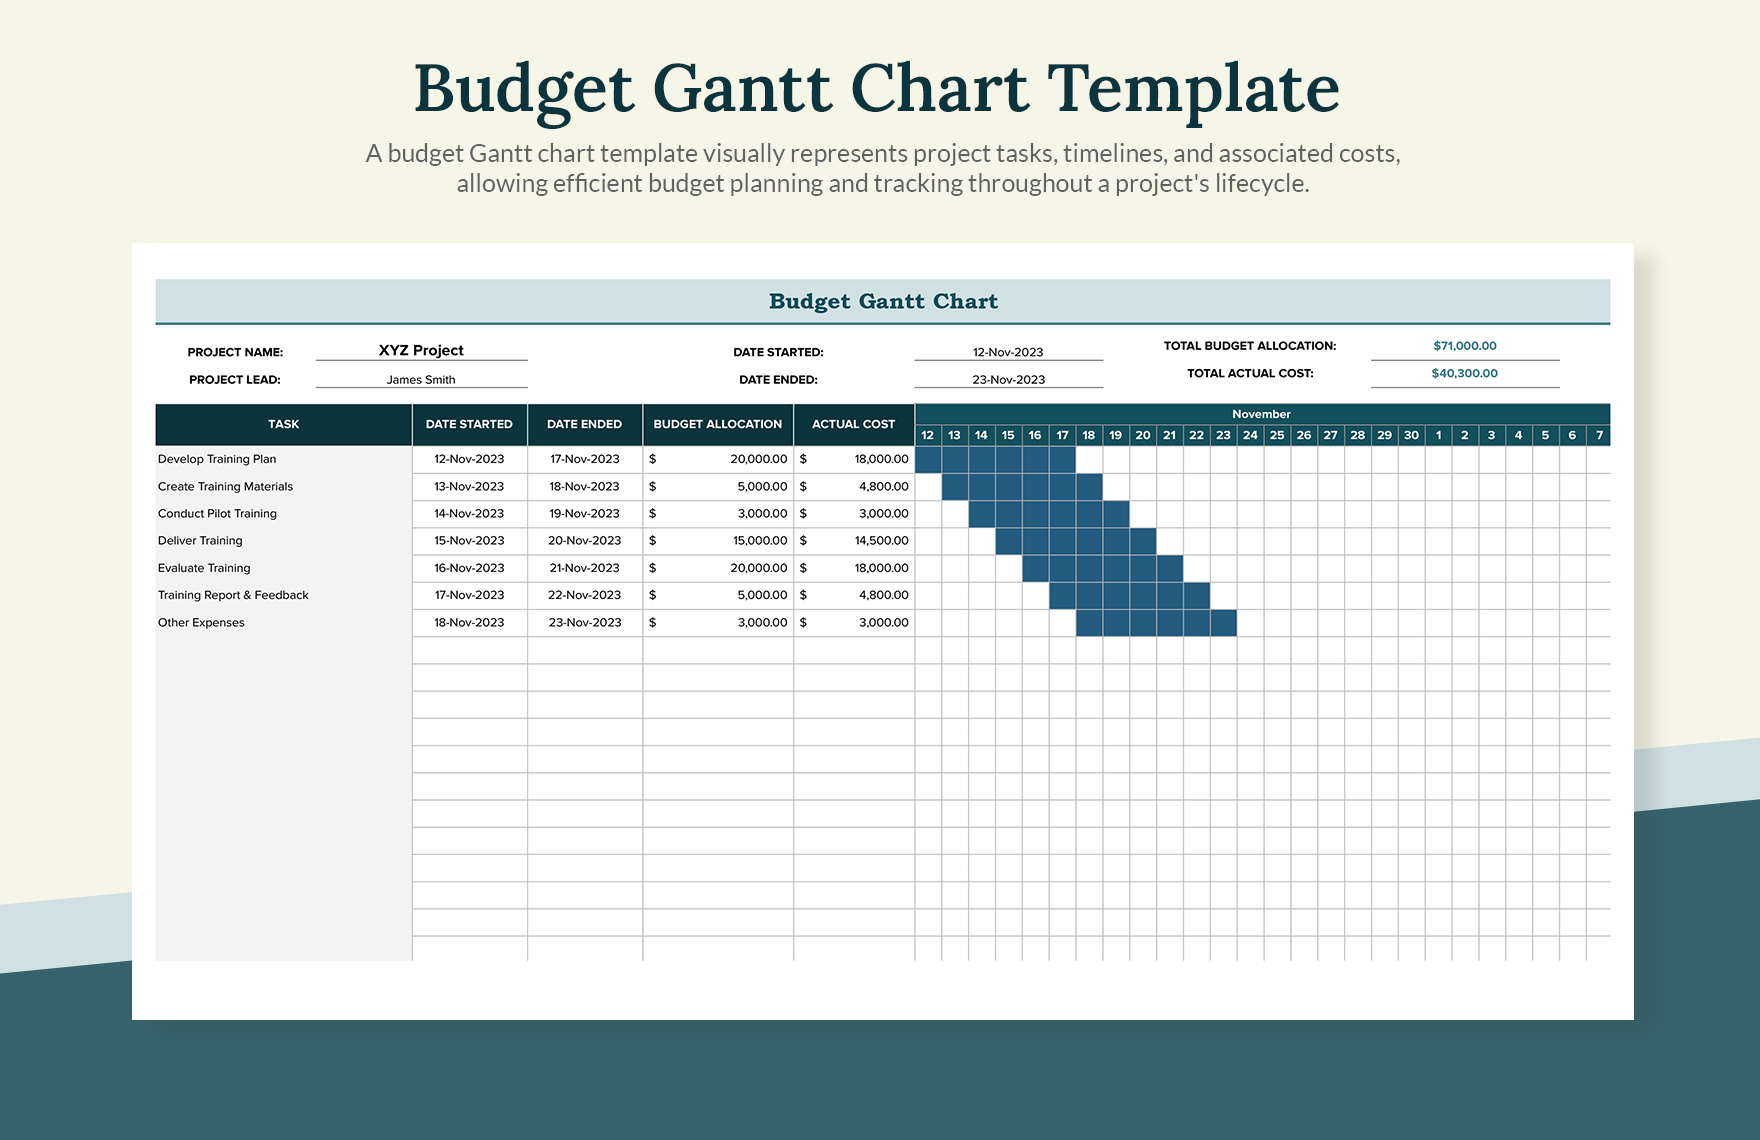 Budget Gantt Chart Template